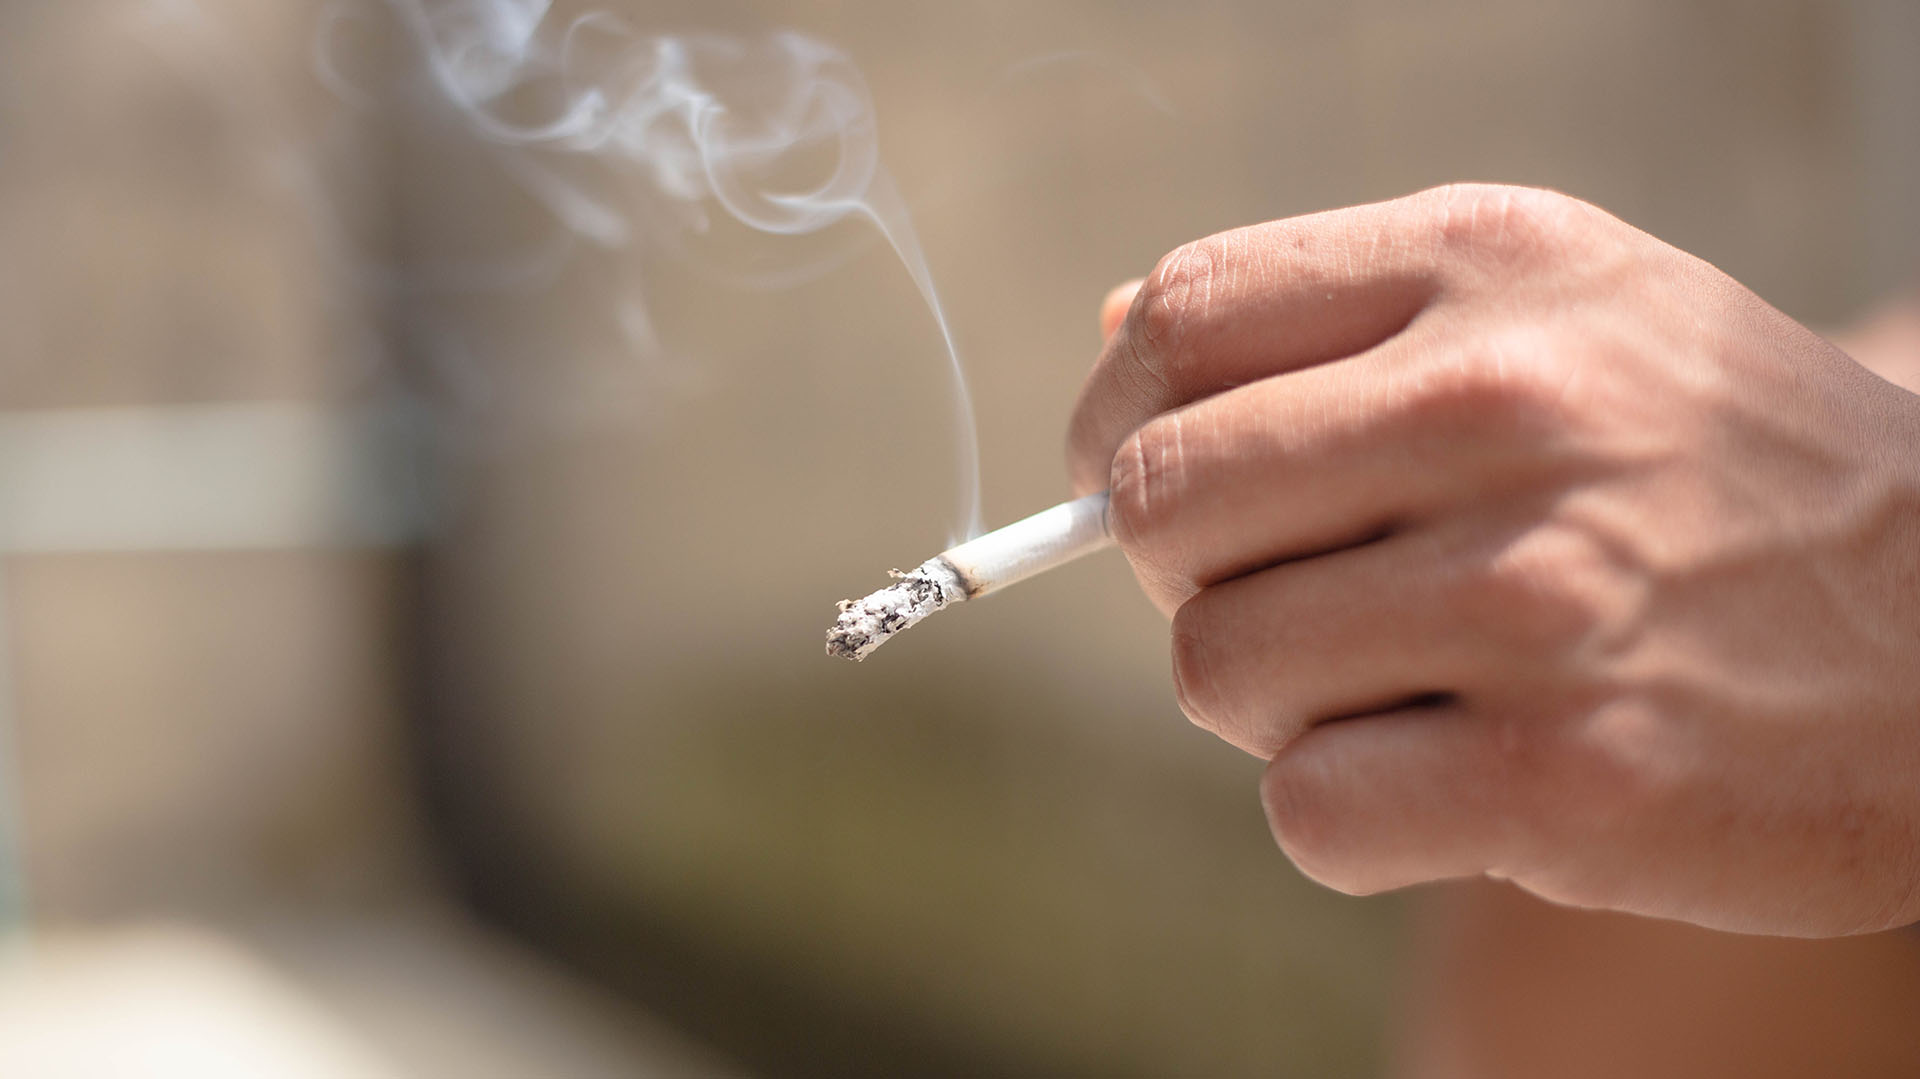 El humo del tabaco deteriora varios componentes de los mecanismos de defensa del aparato respiratorio (Shutterstock)